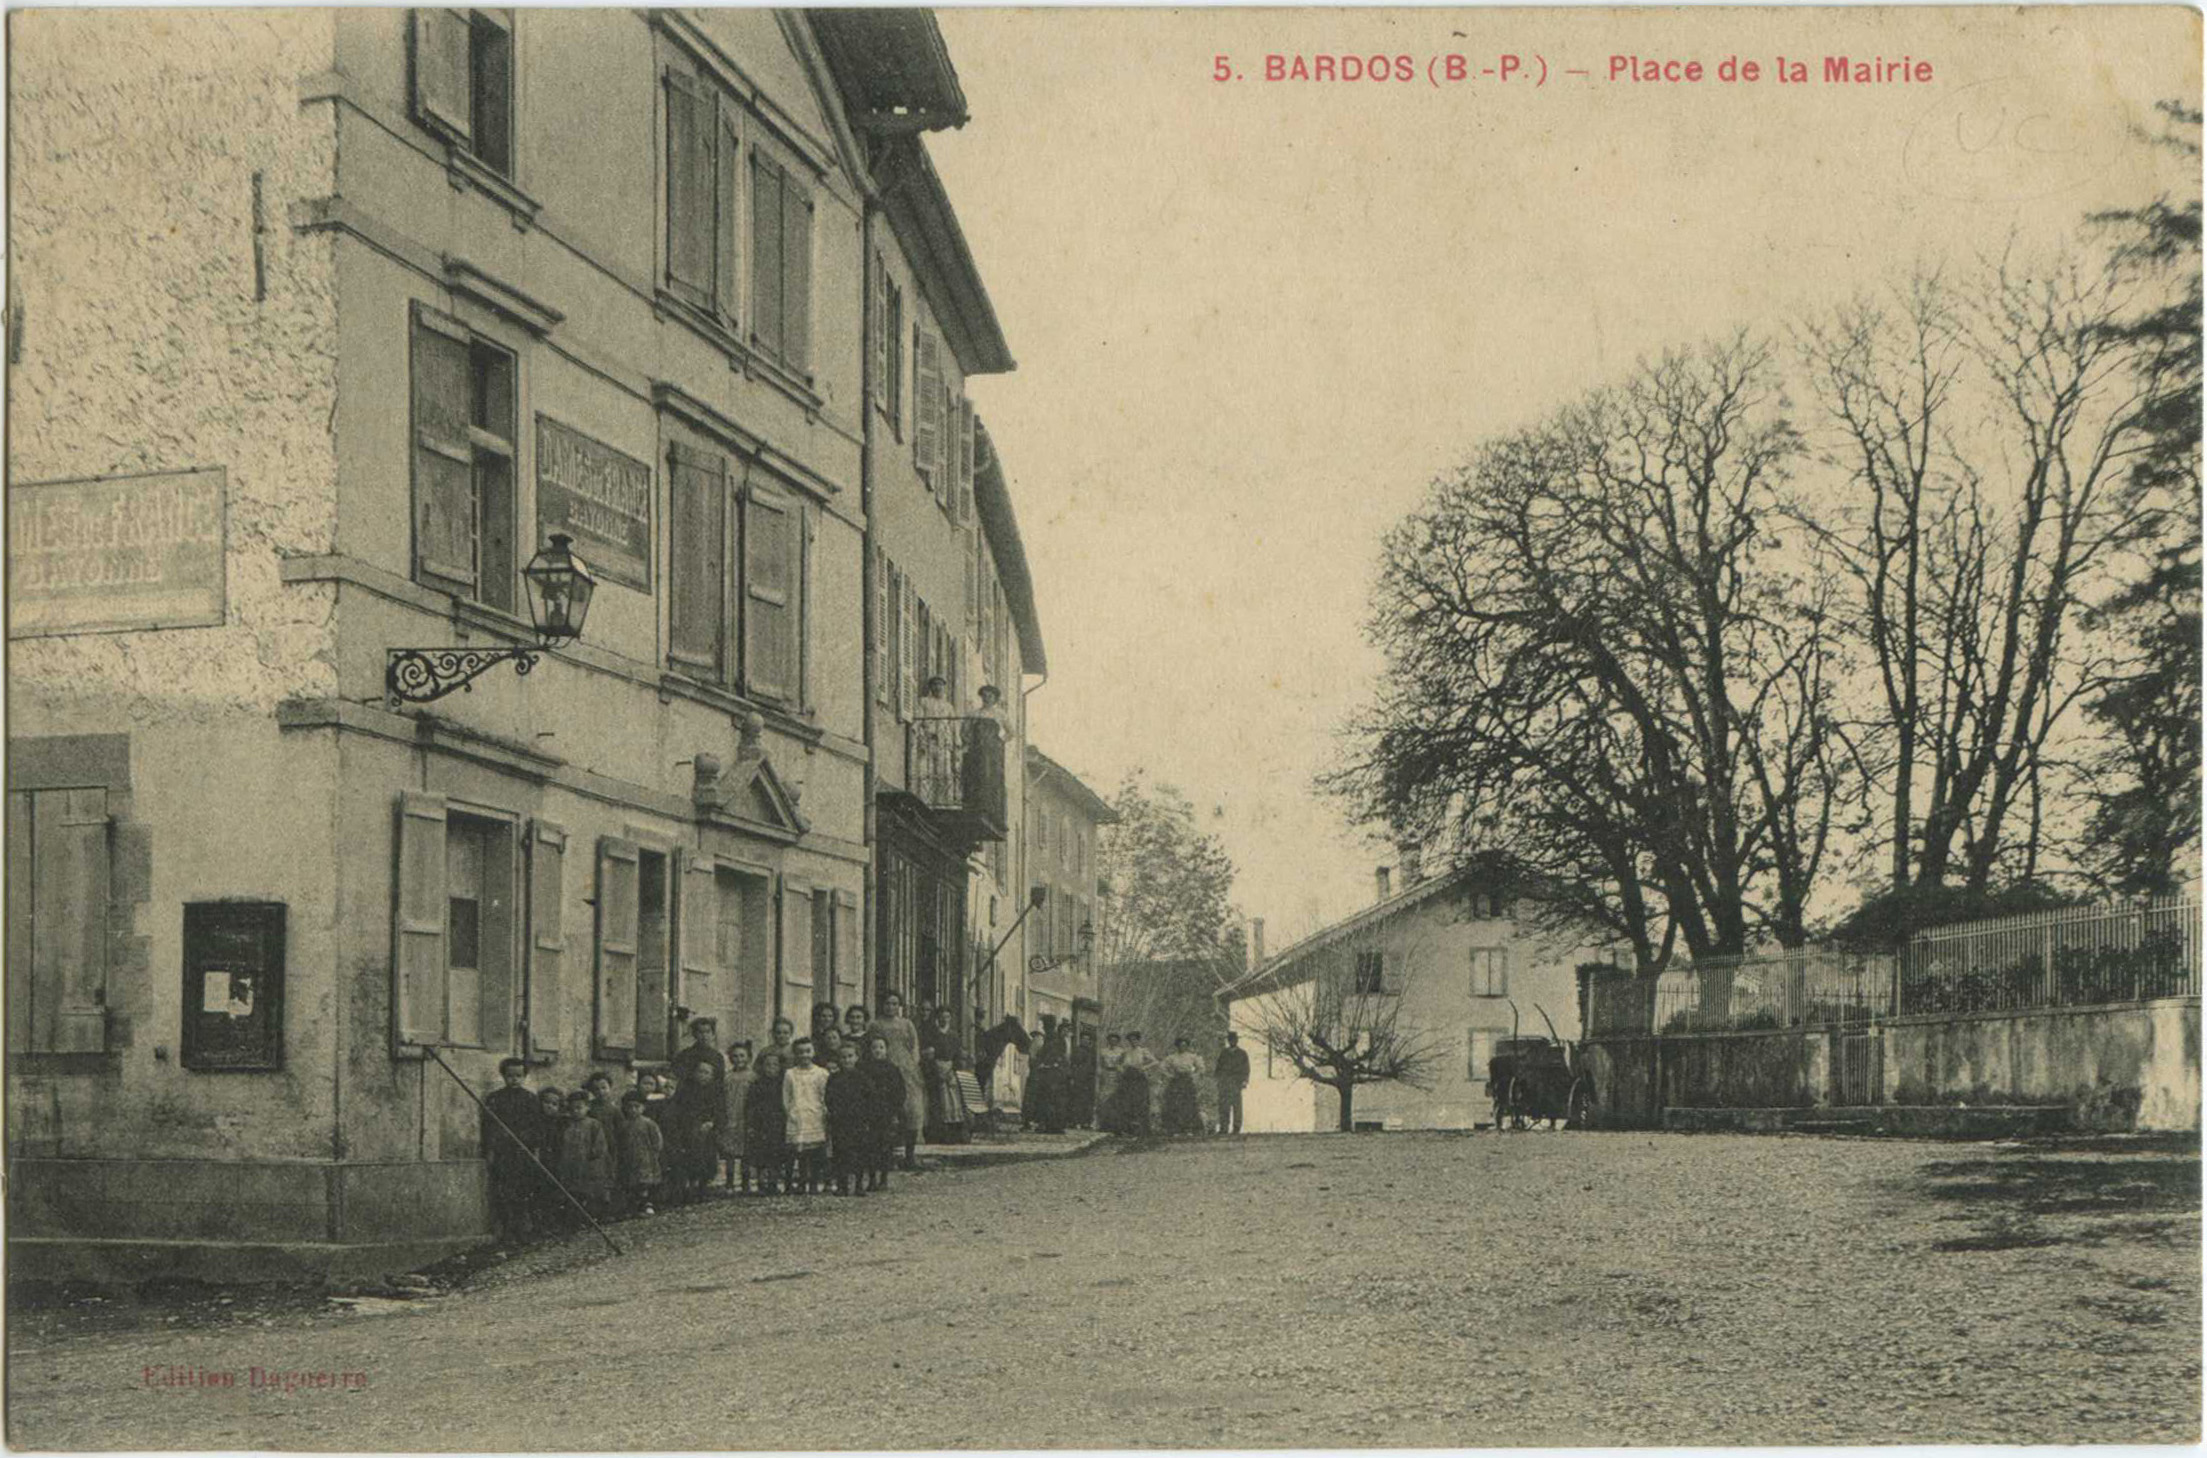 Bardos - Place de la Mairie